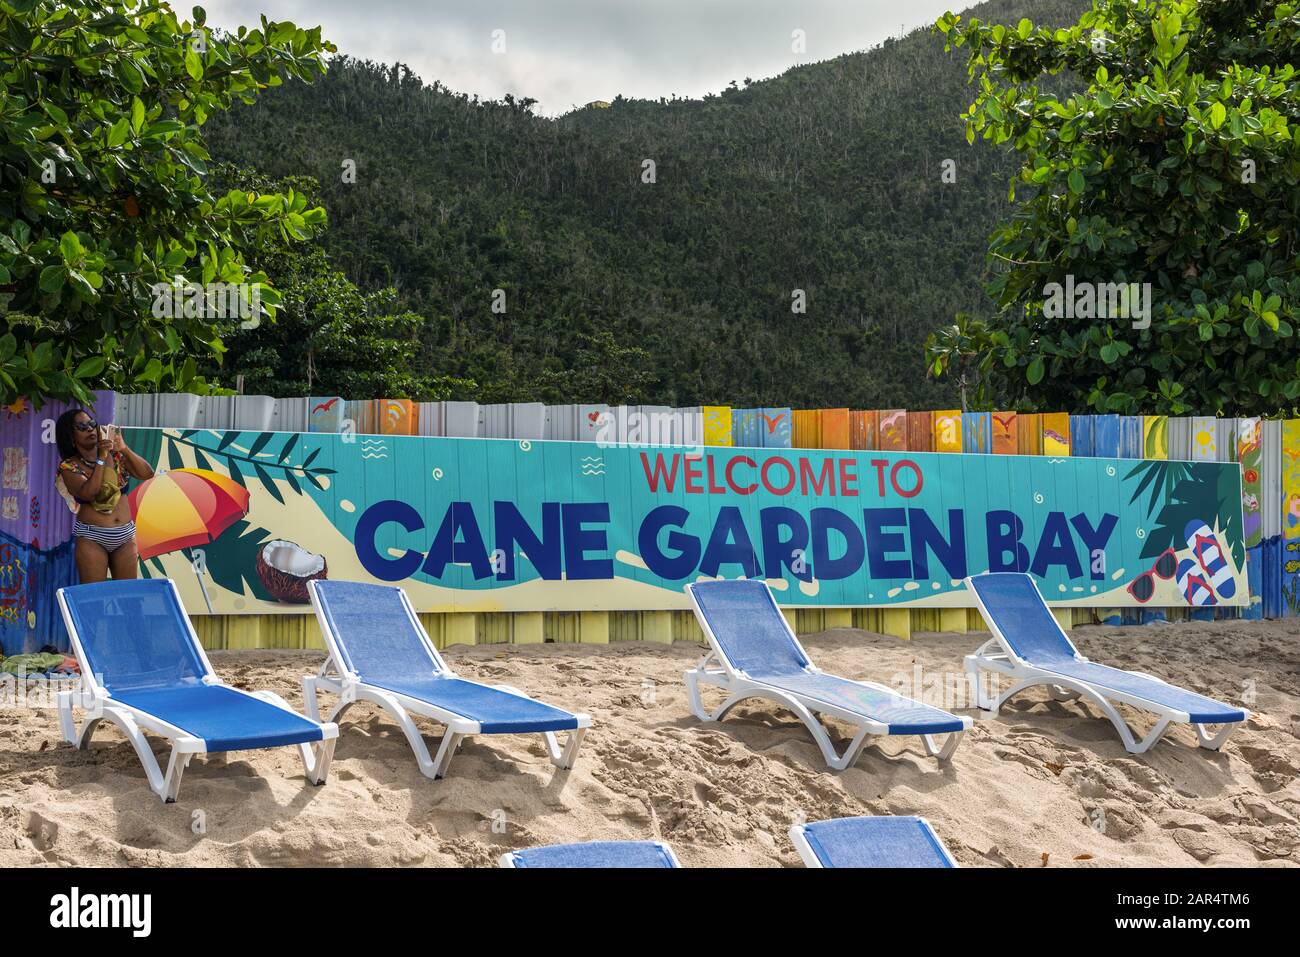 Cane Garden Bay, Tortola, britische Jungferninseln - 16. Dezember 2018: Willkommensschild "Welcome to Cane Garden Bay" im Plakat auf Cane Garden Bay in Der Ca Stockfoto